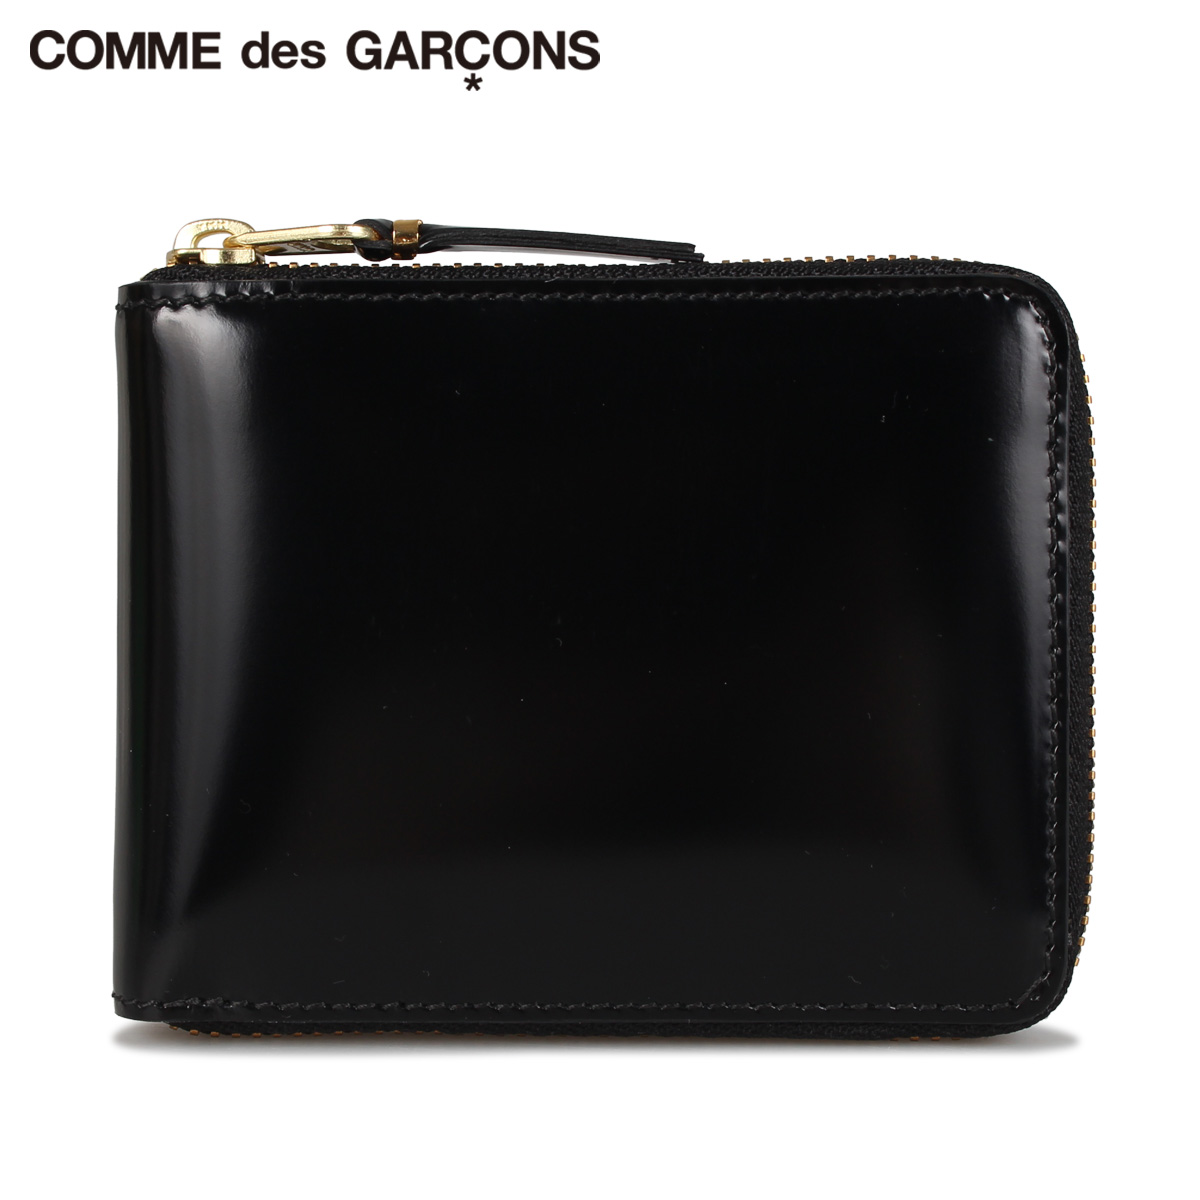 コム・デ・ギャルソン(Comme des Garcons) メンズ二つ折り財布 | 通販 